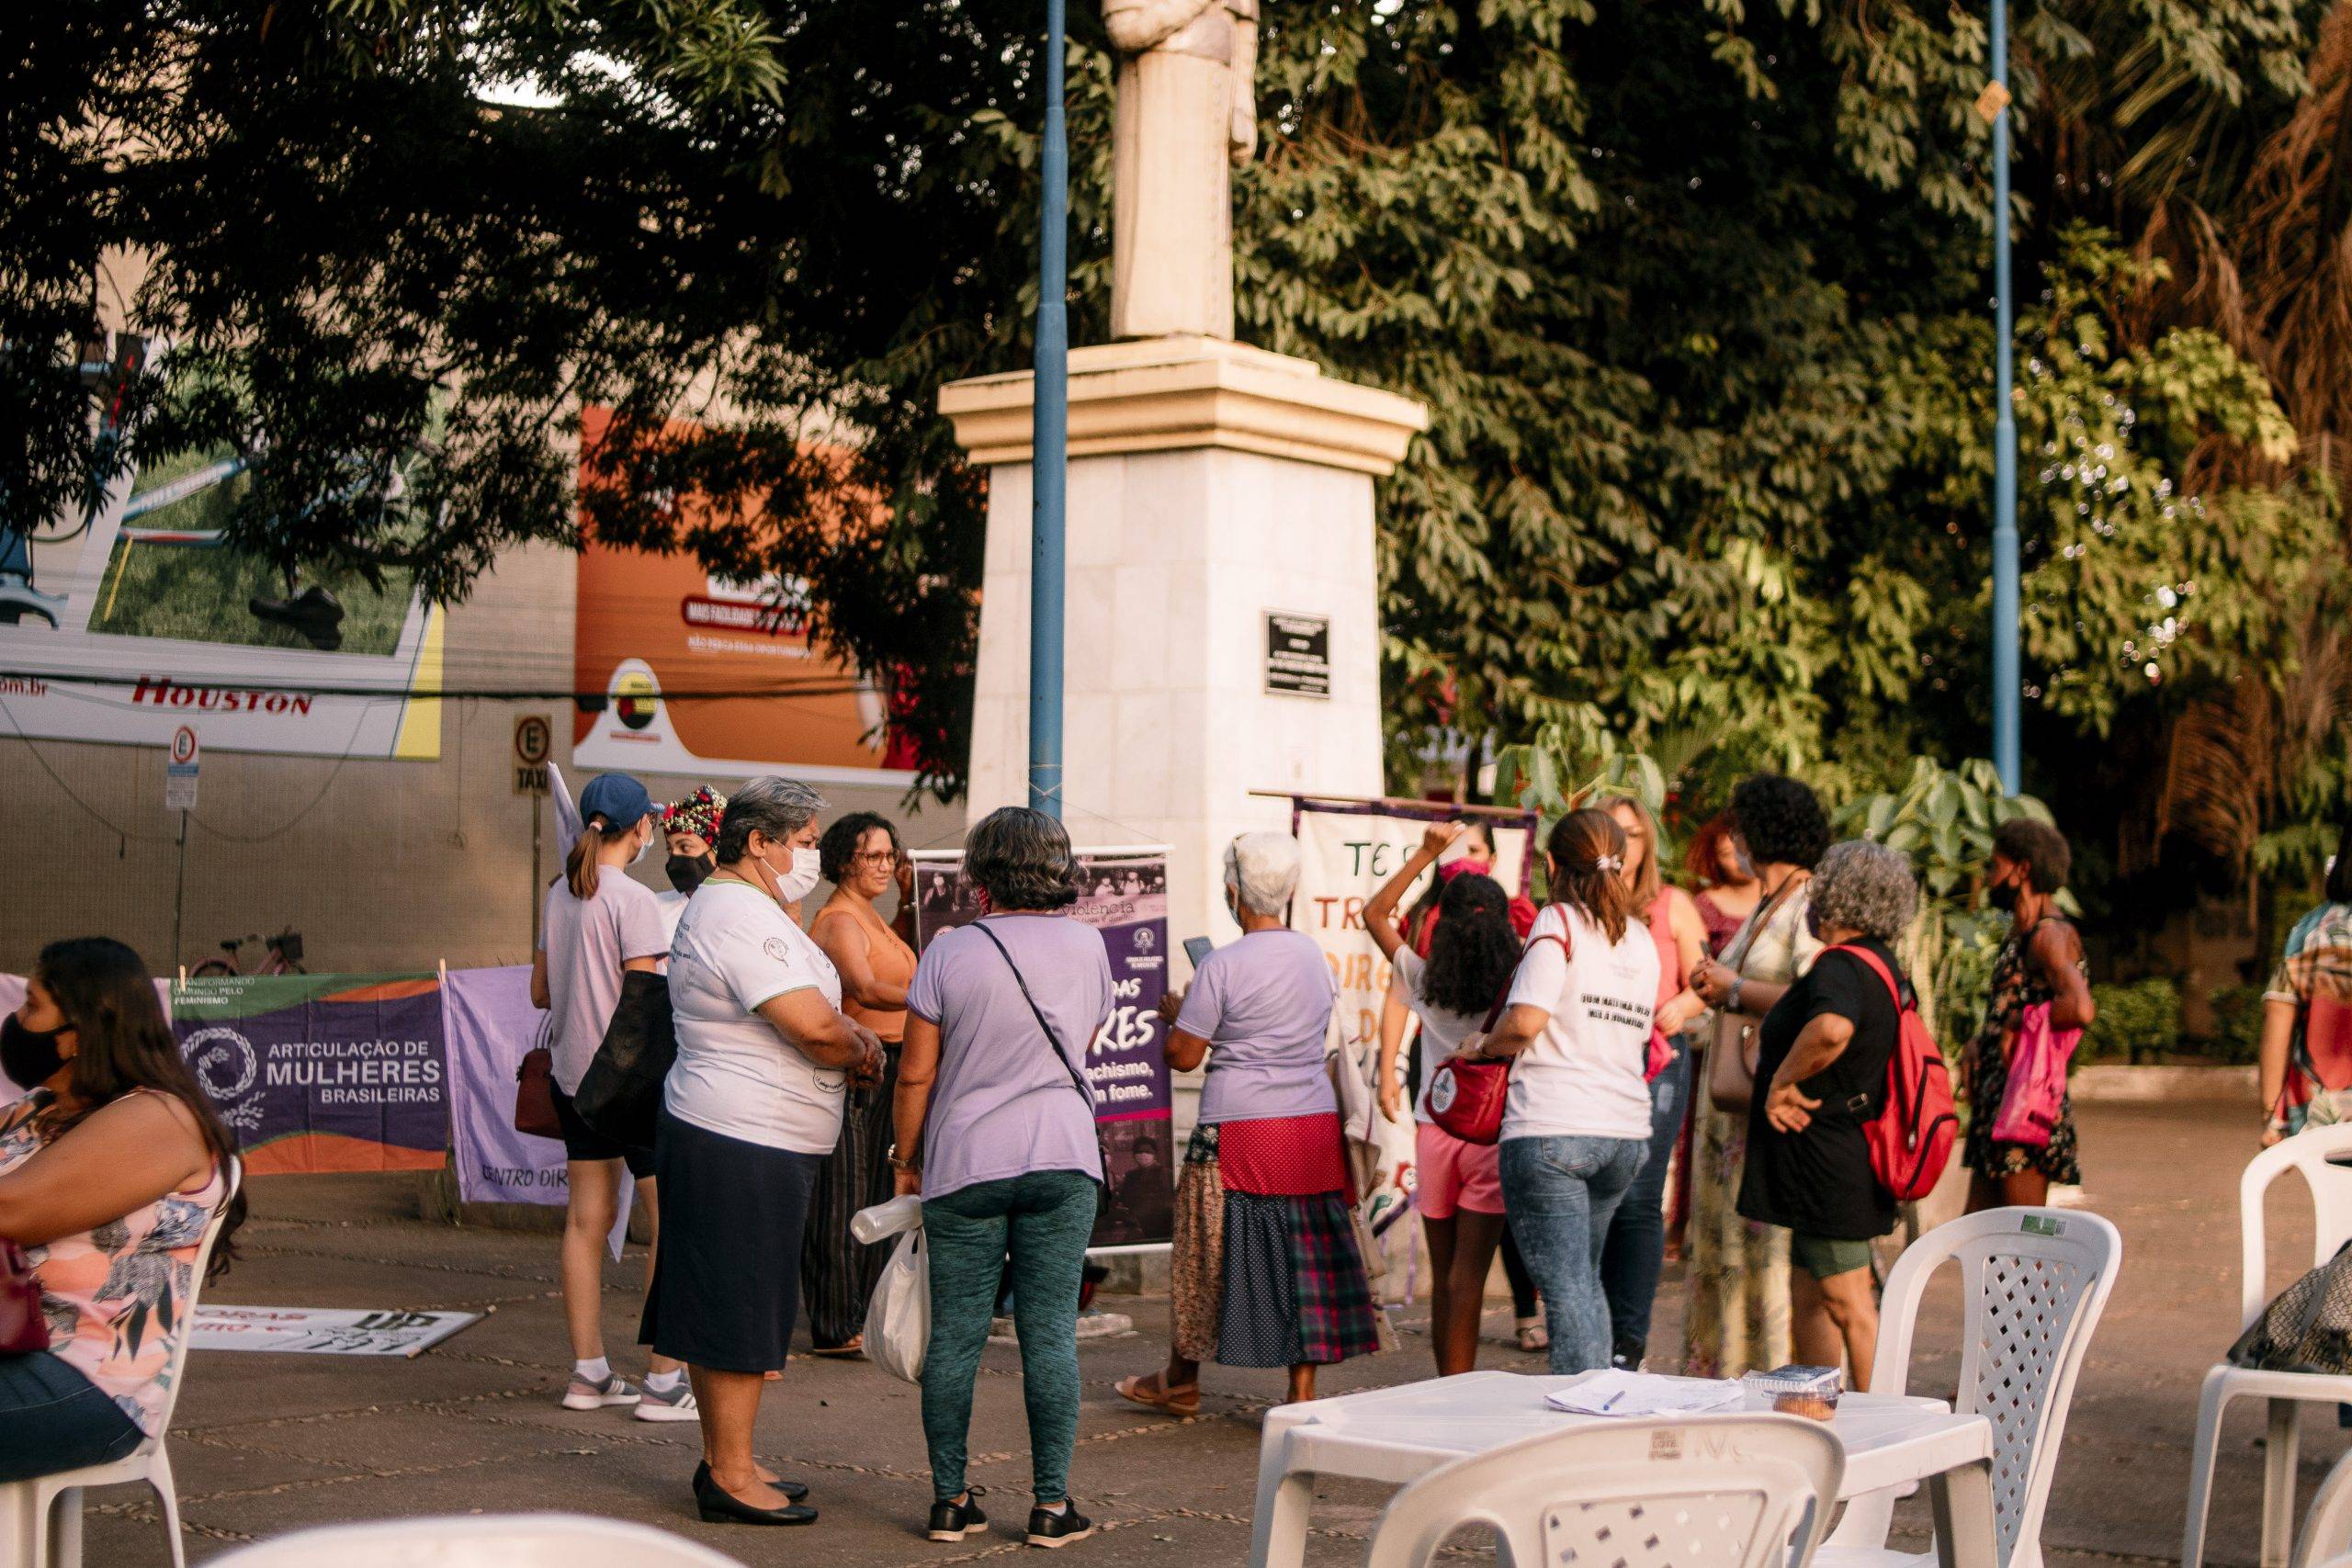 Em volta de estátua, na Praça de Fátima, há um varal onde estão penduradas várias bandeiras e faixas de movimentos. Várias mulheres diversas conversam por perto.